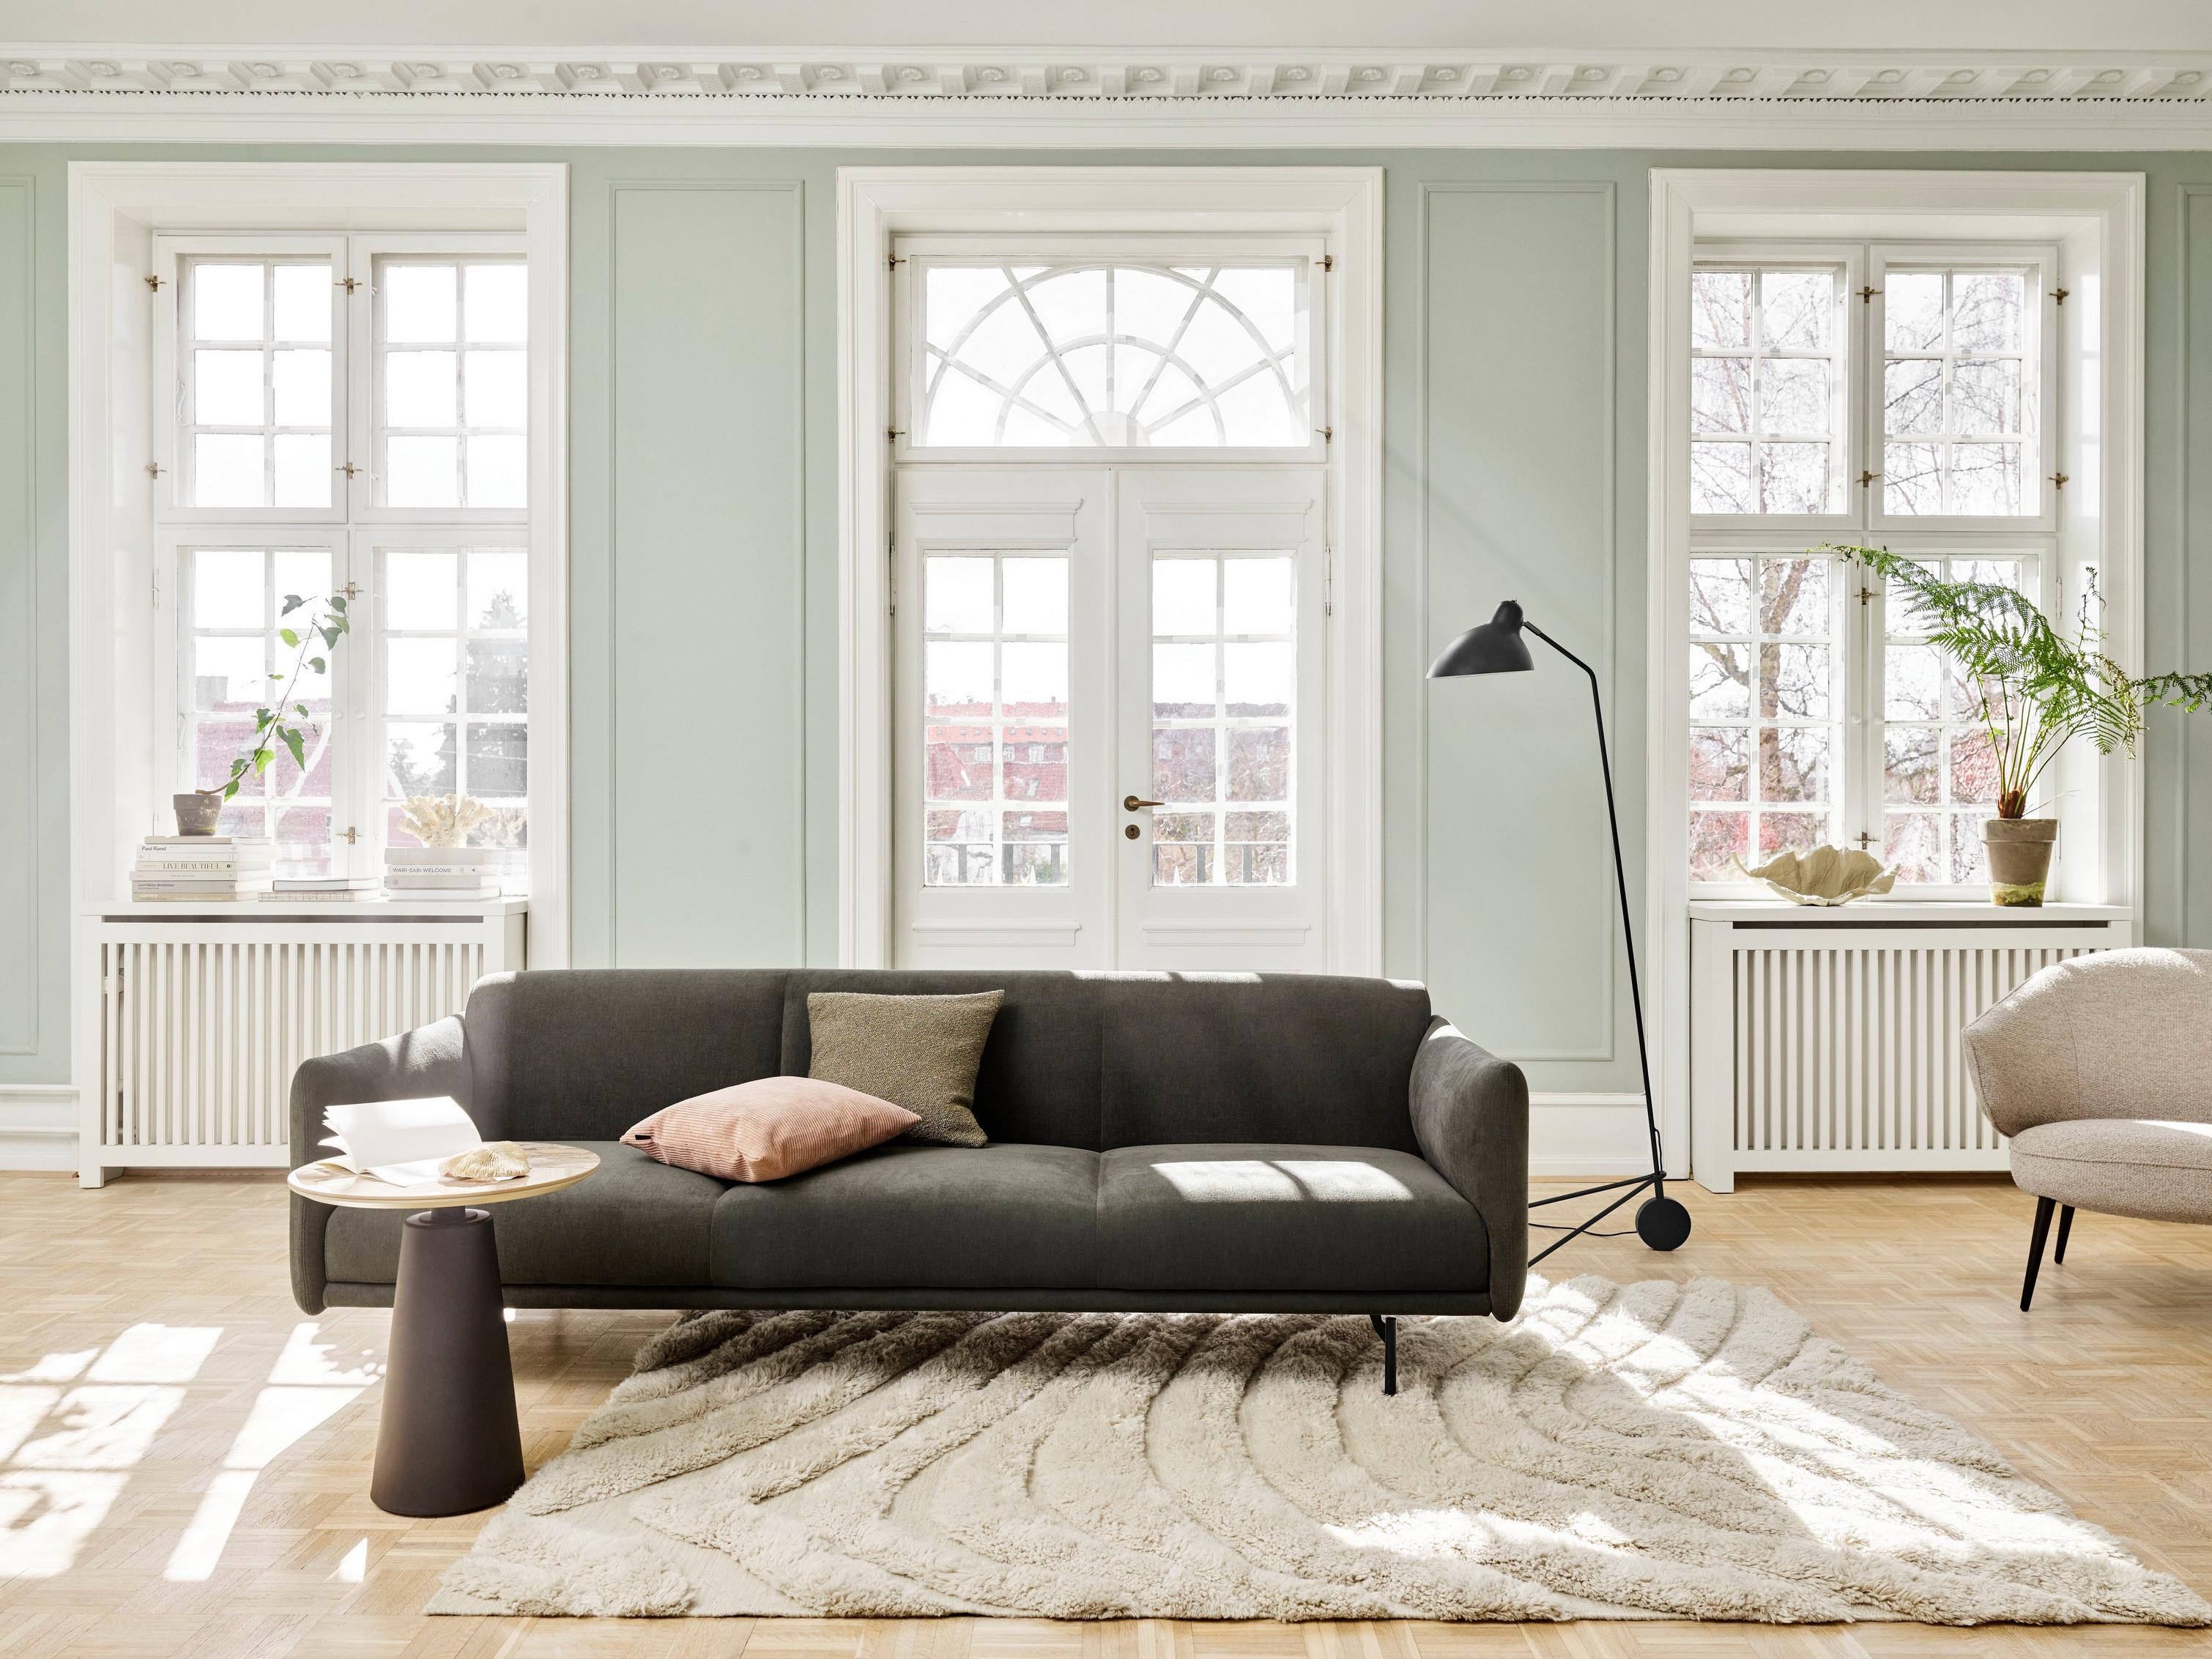 Ruhiges Wohnzimmer mit Berne Sofa, Madrid Beistelltisch und Demand Stehlampe.